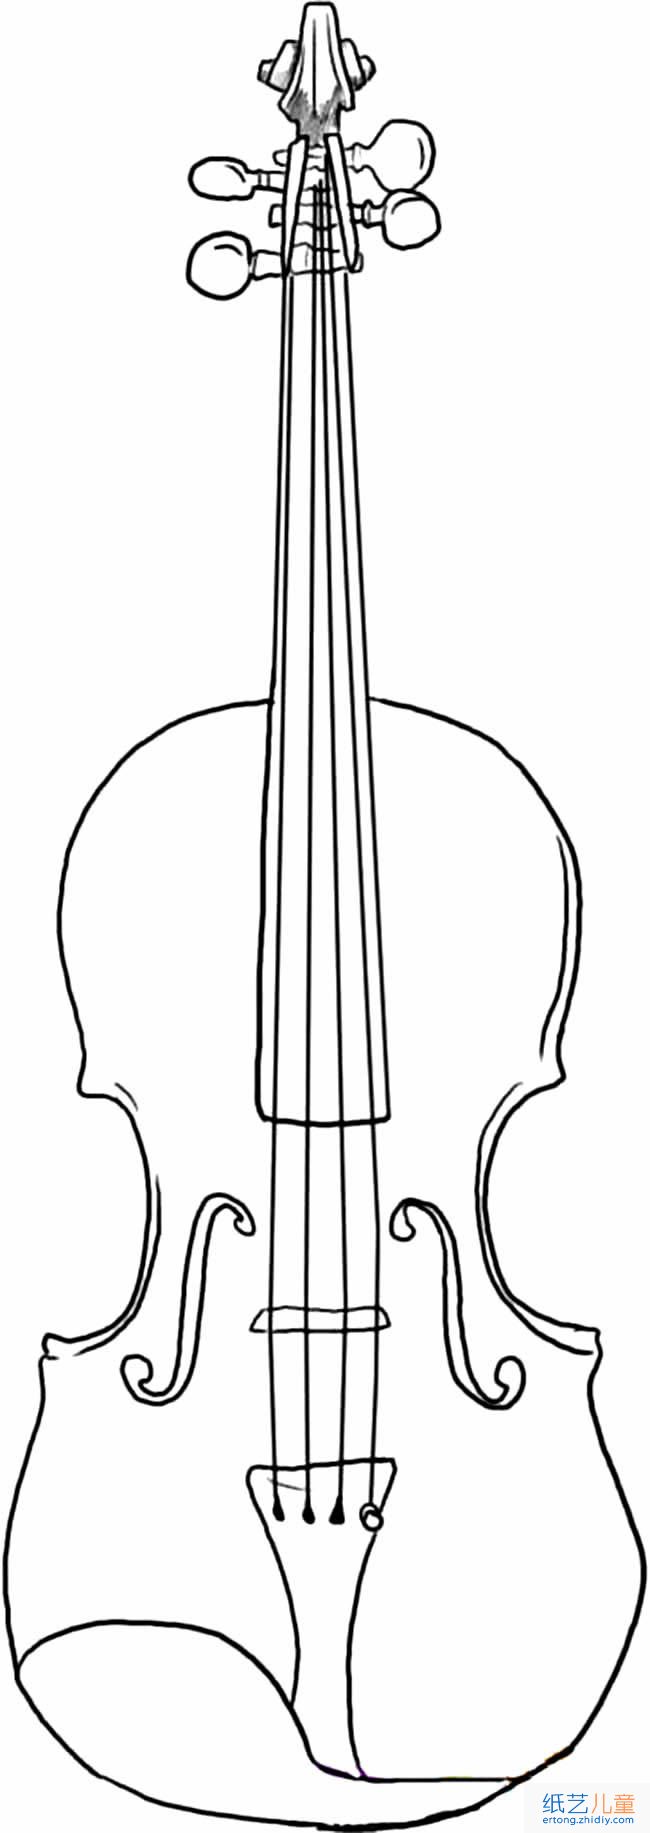 小提琴乐器物品简笔画步骤图片大全